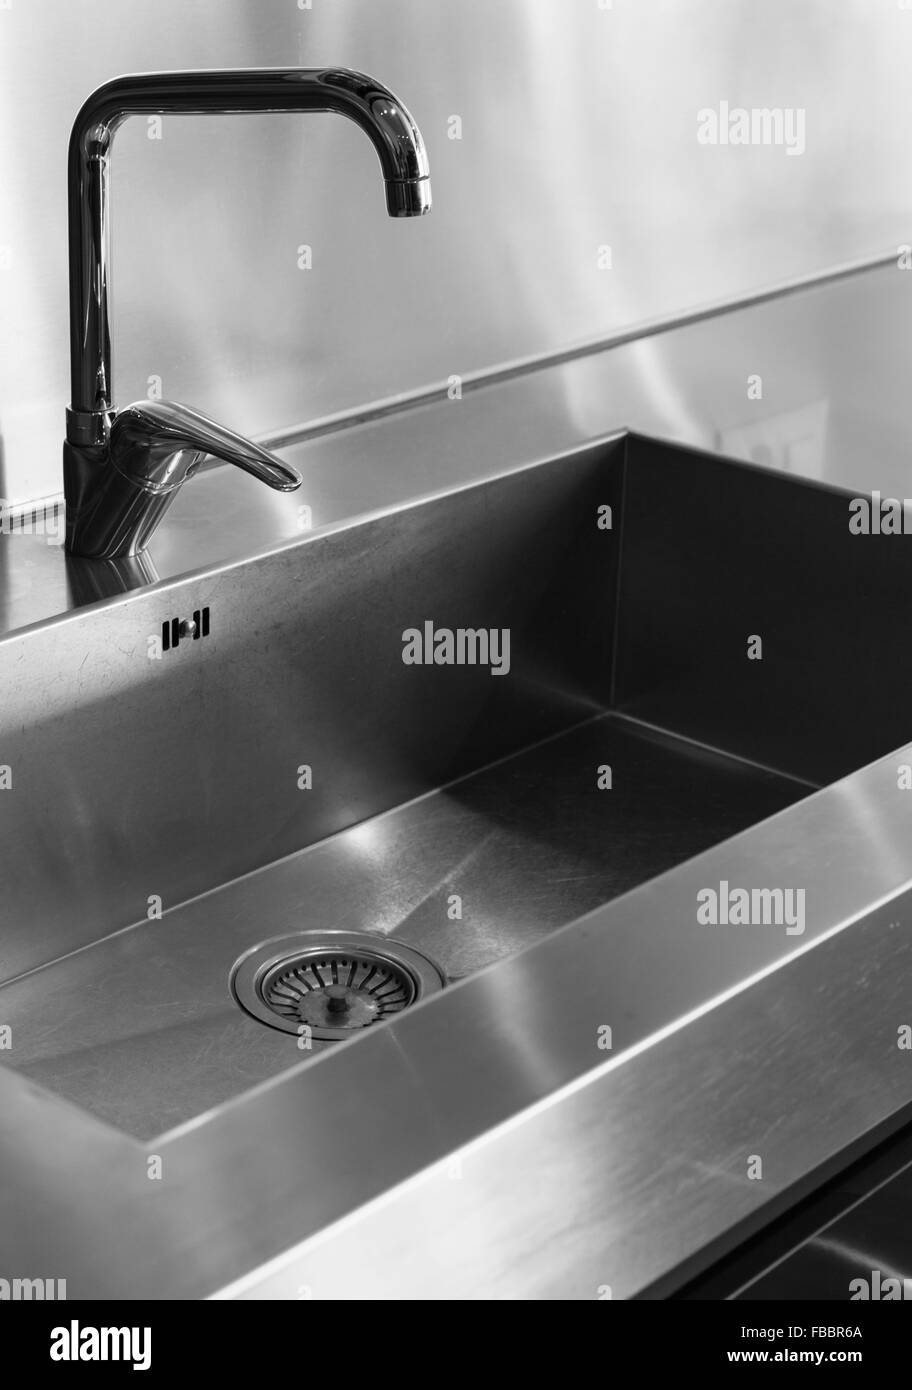 Dettaglio rubinetto cucina domestica Foto Stock